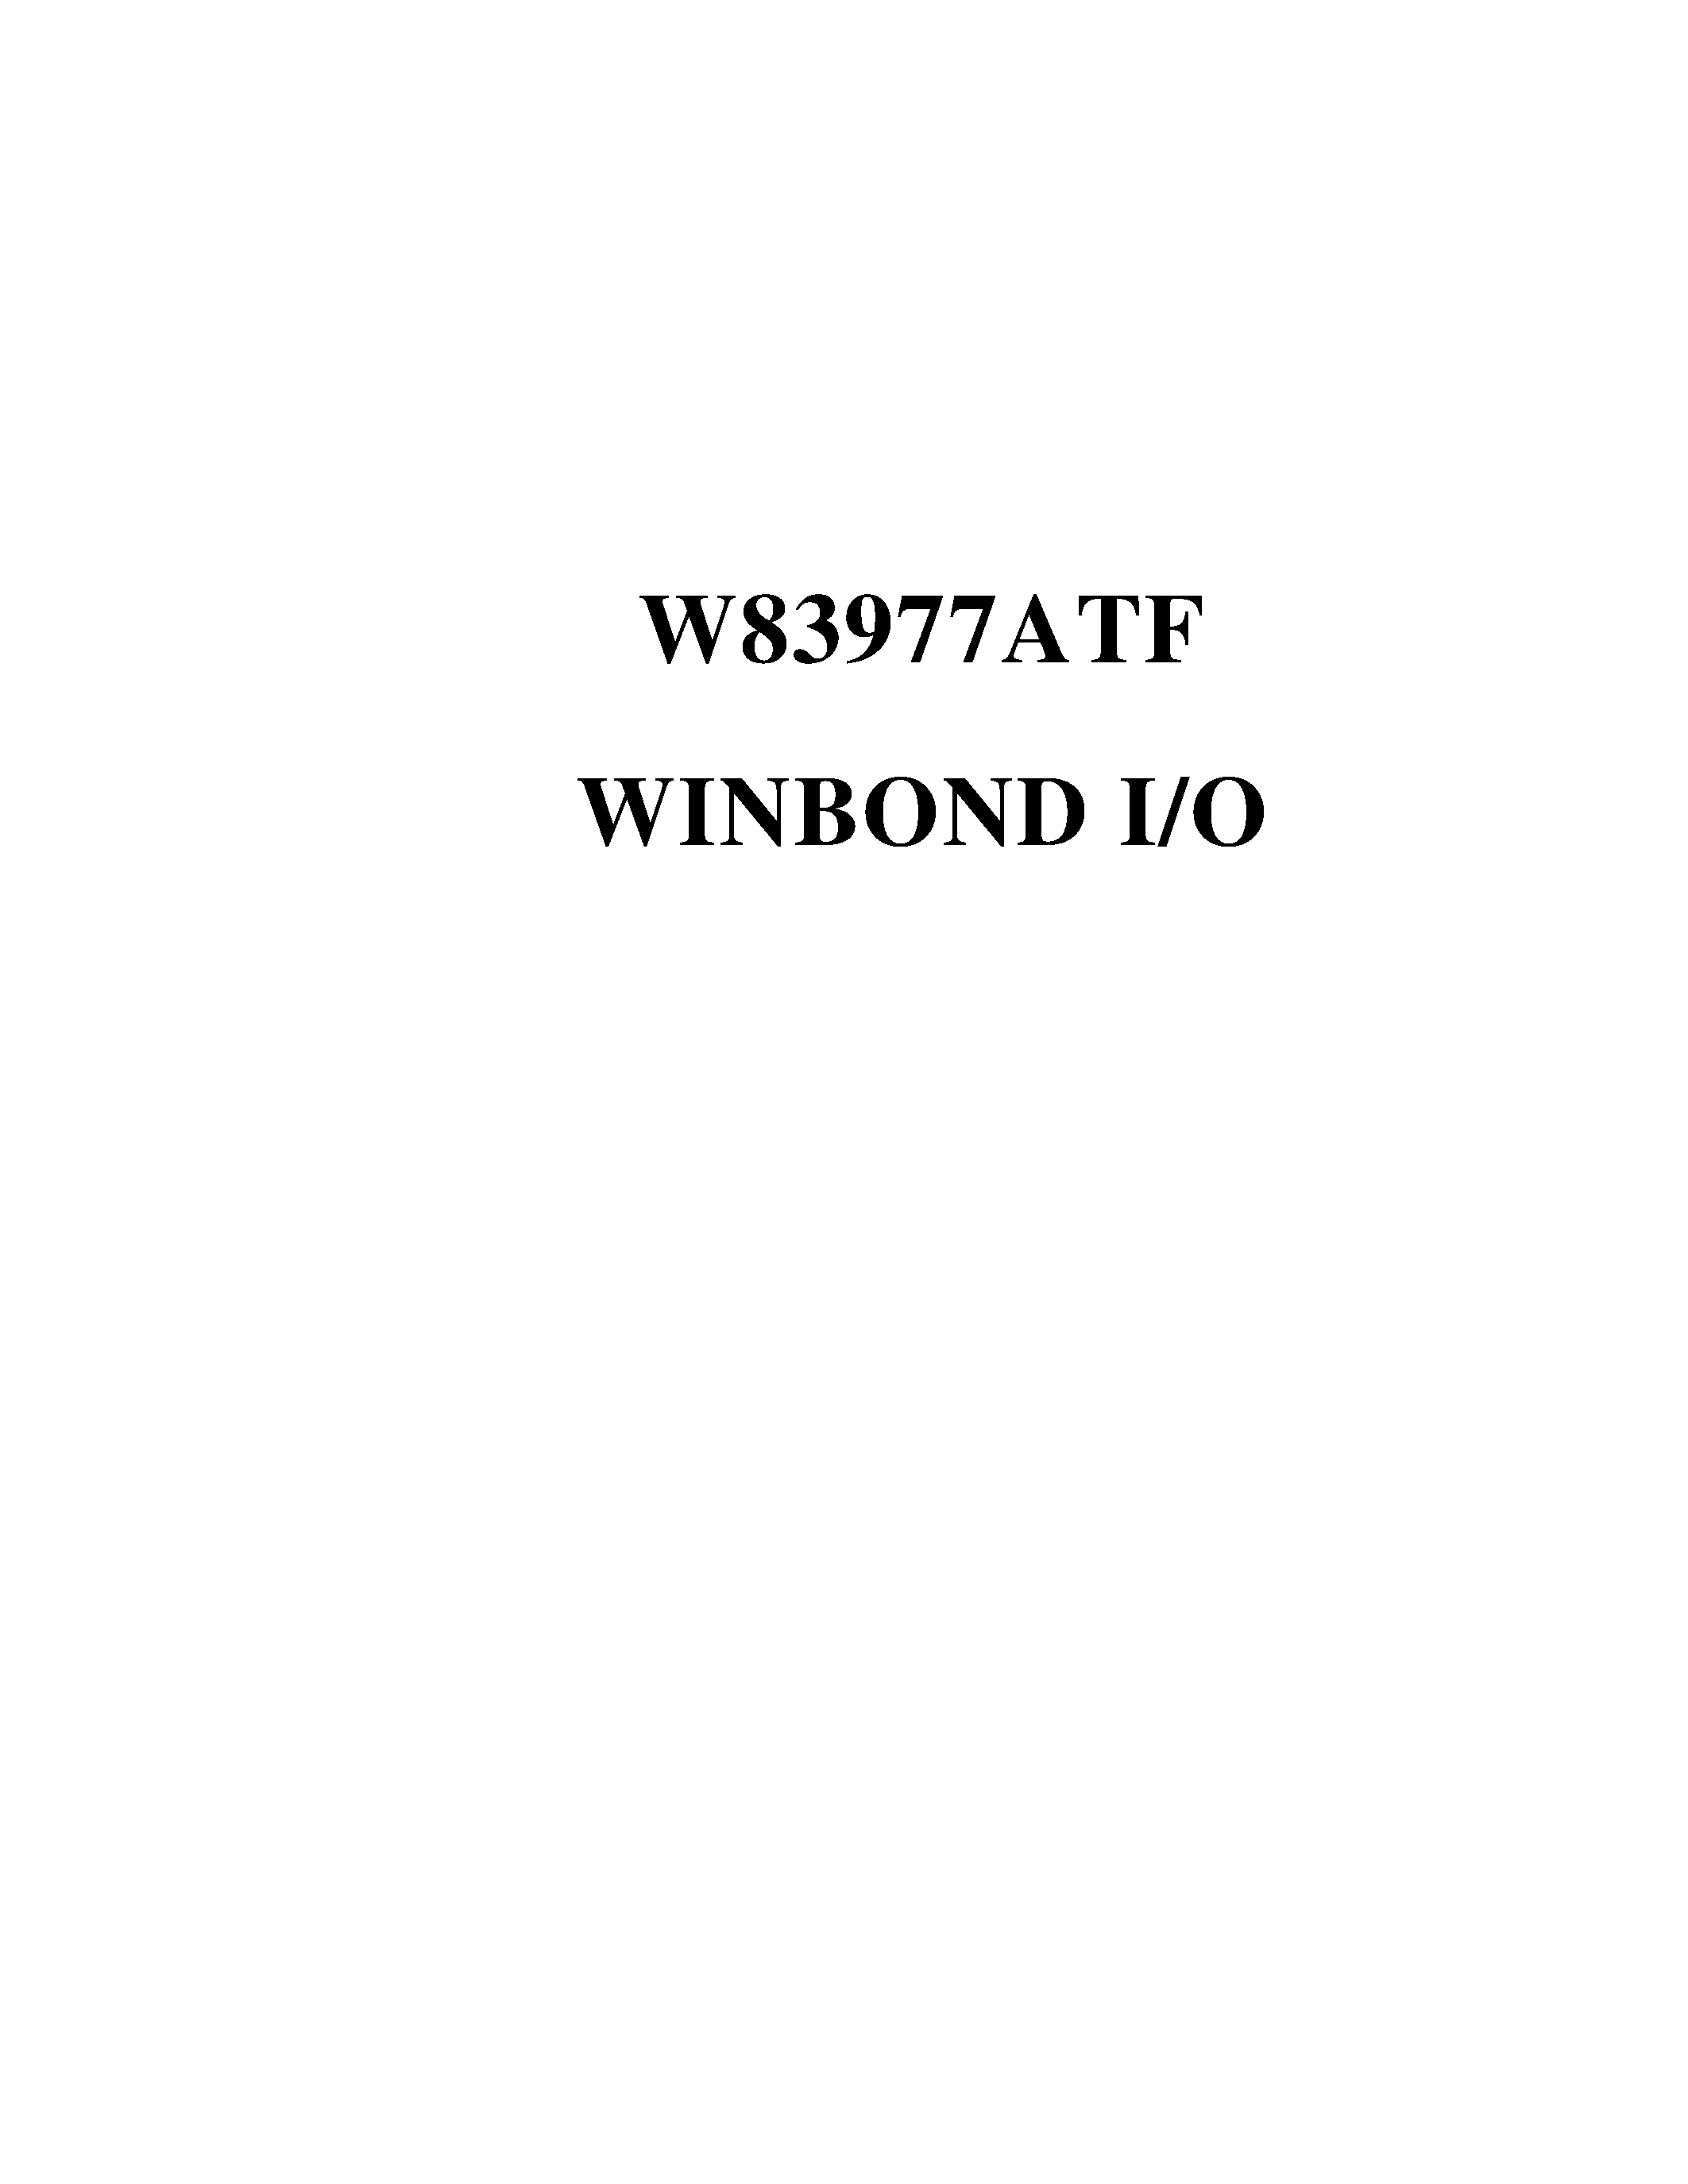 Datasheet W83977A - WINBOND I/O page 1